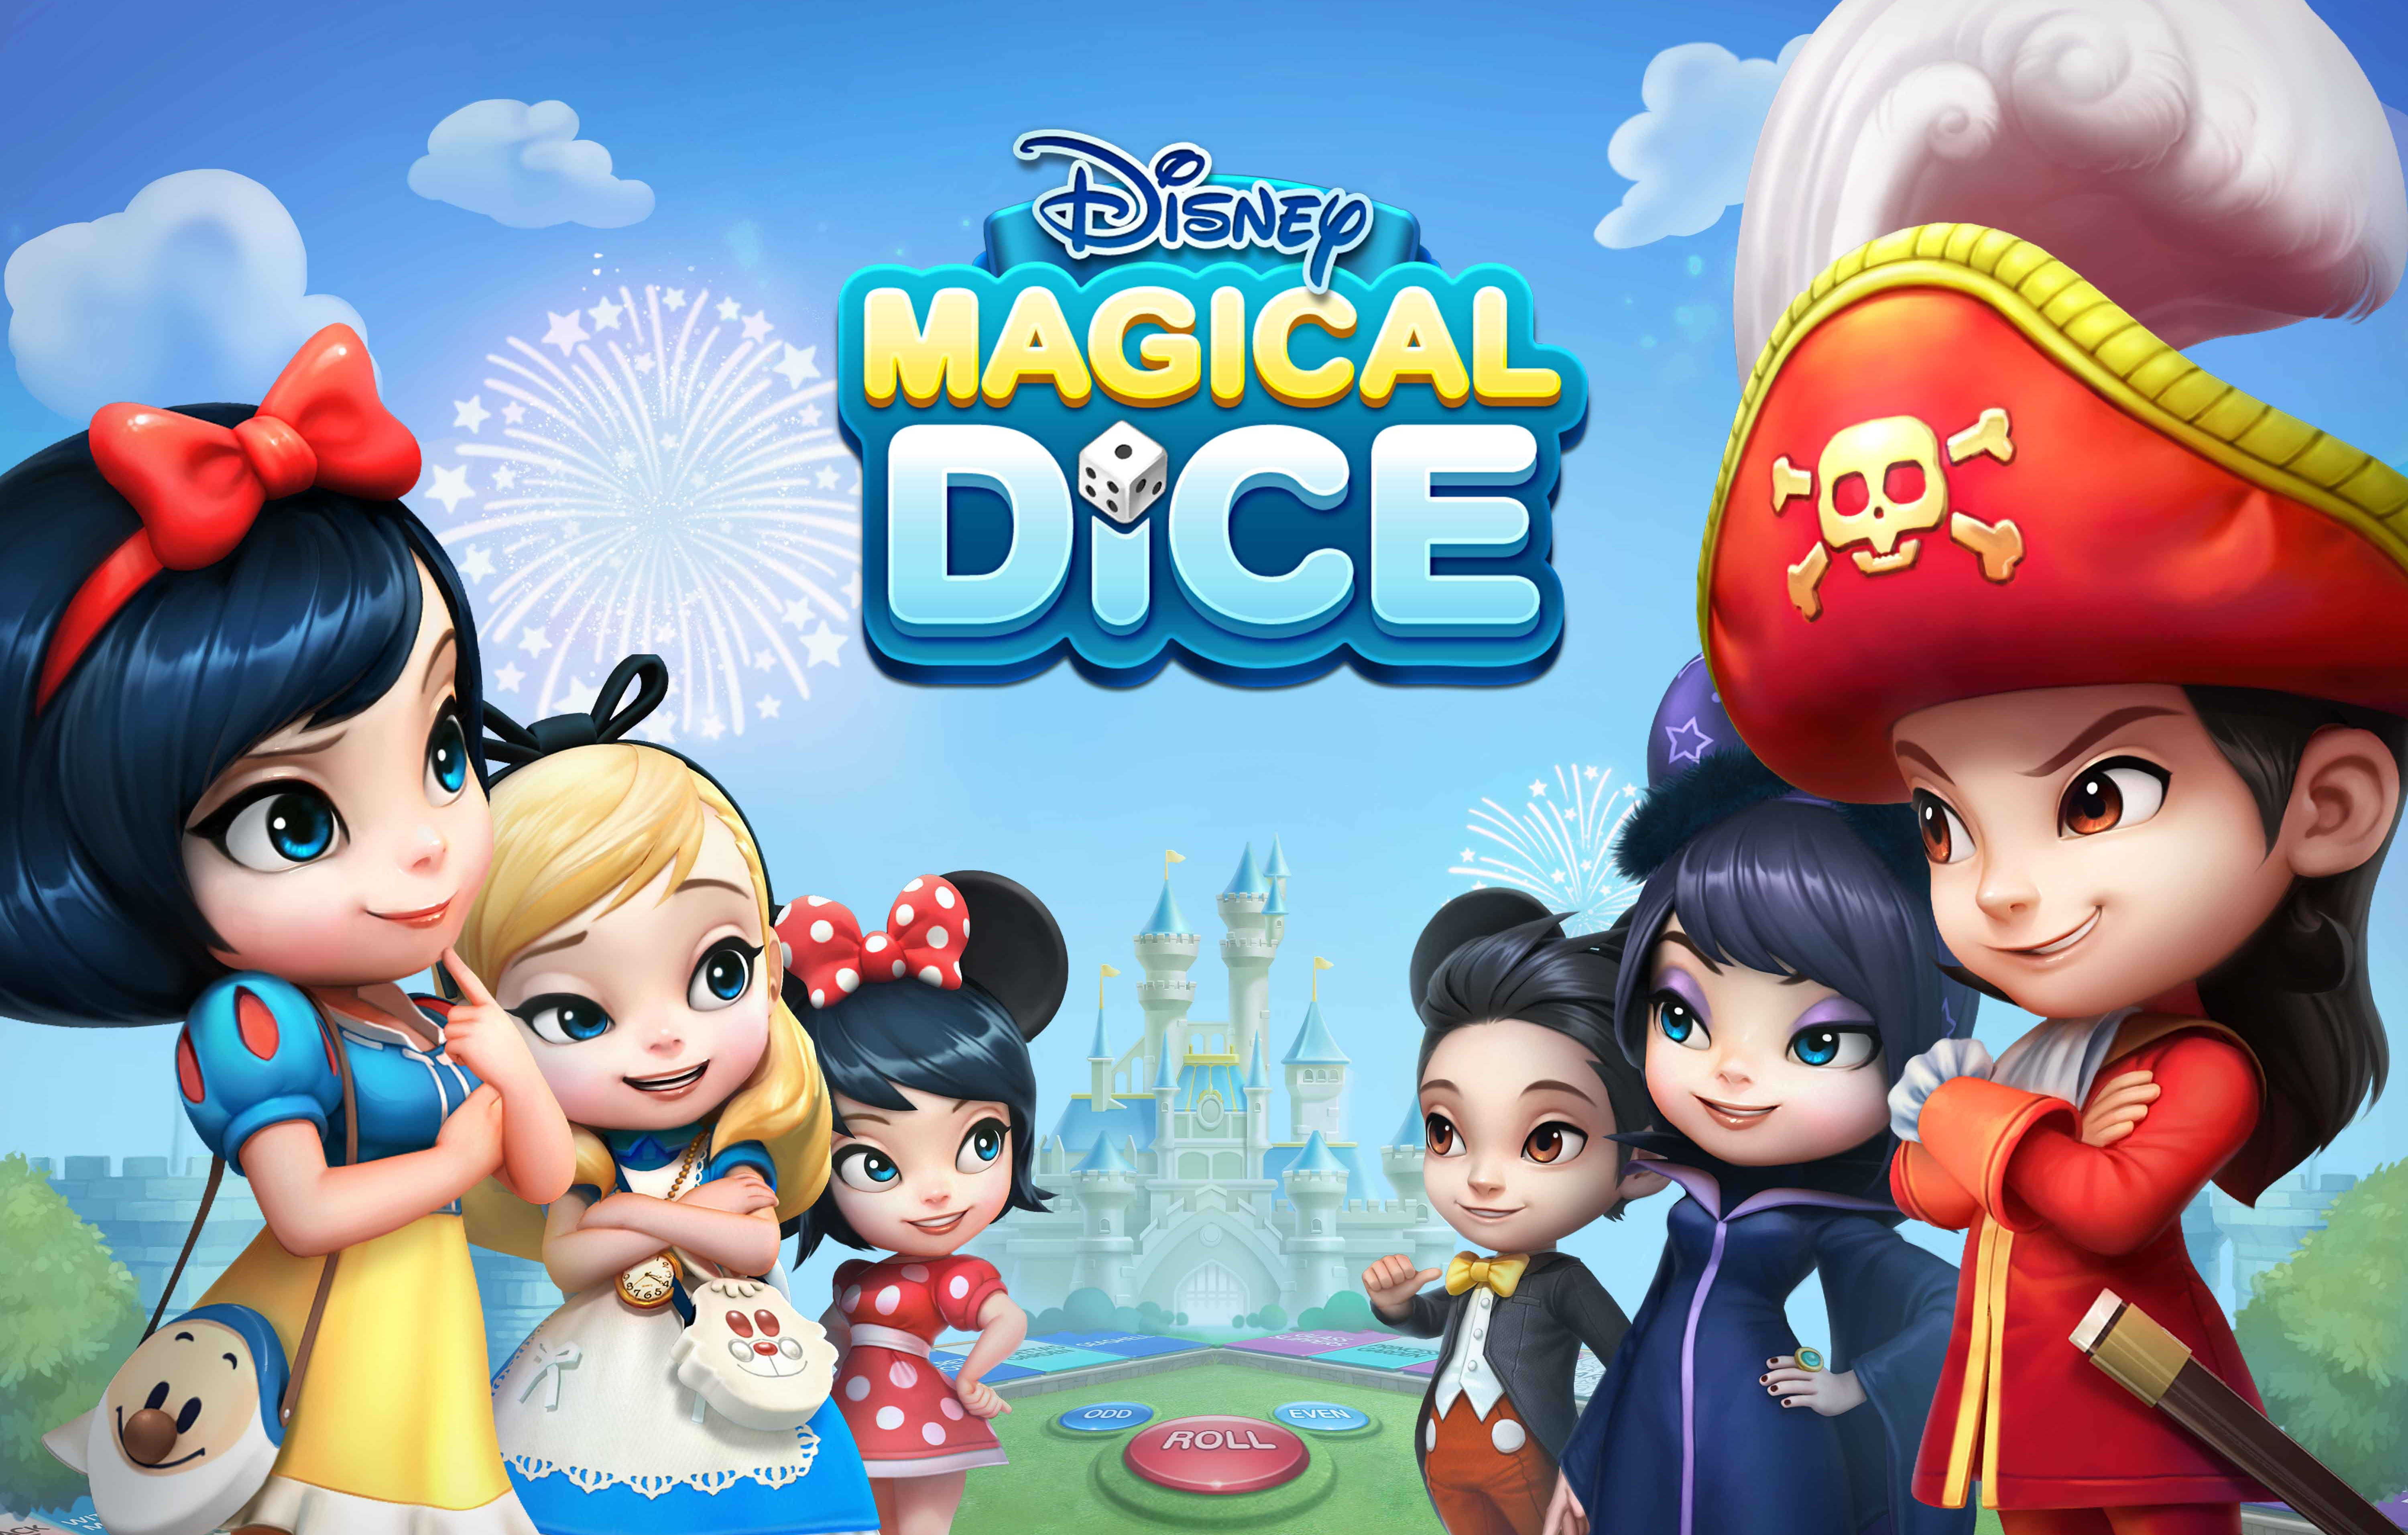 디즈니 매지컬 다이스 타이틀 (Disney Magical Dice Title)